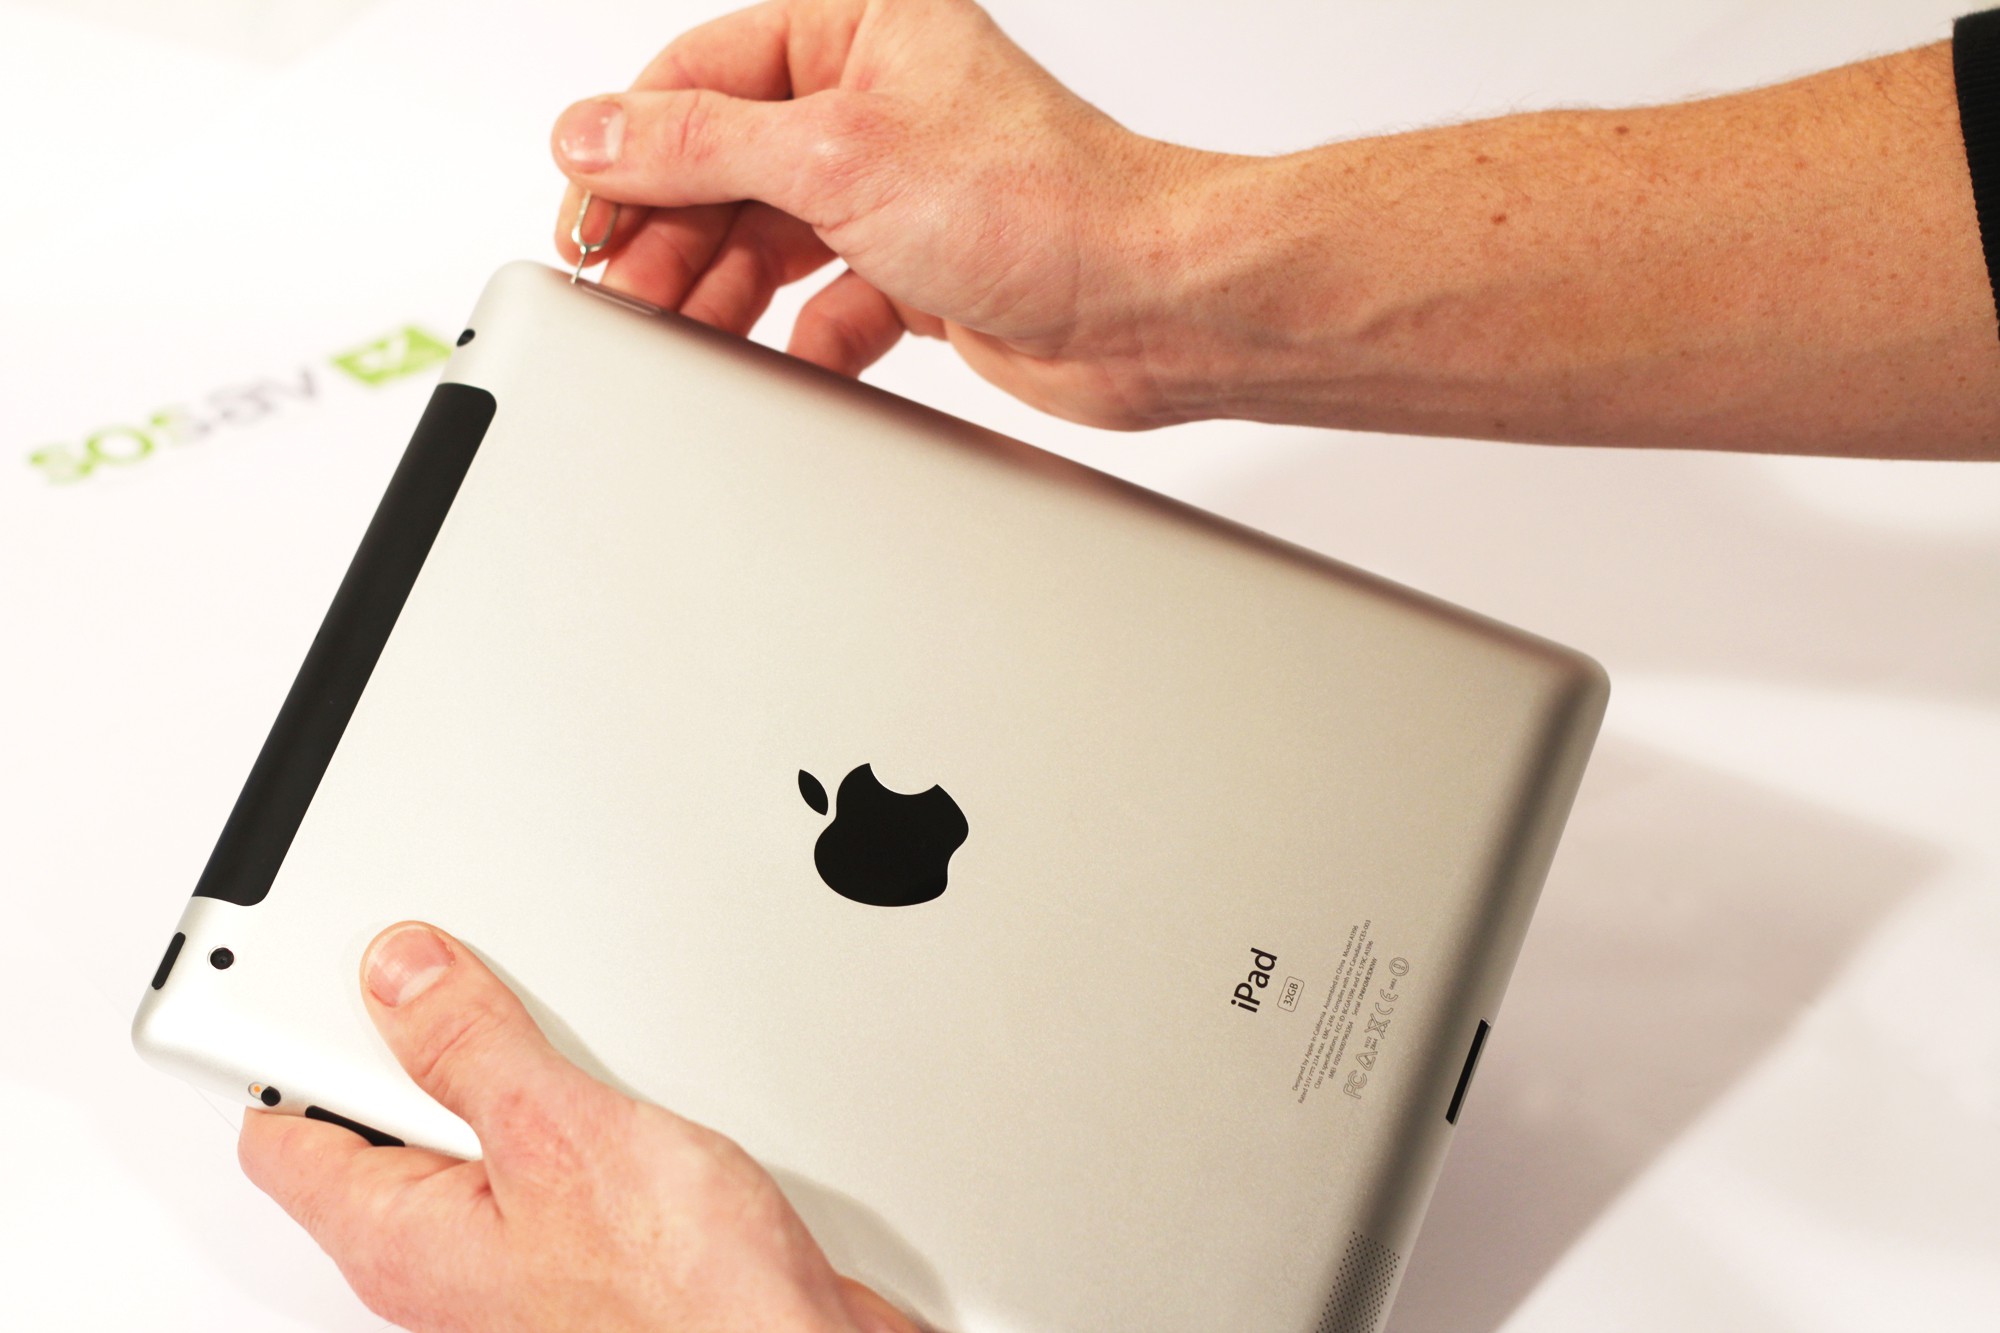 Réparation Carte SIM iPad 2 3G - Guide gratuit 